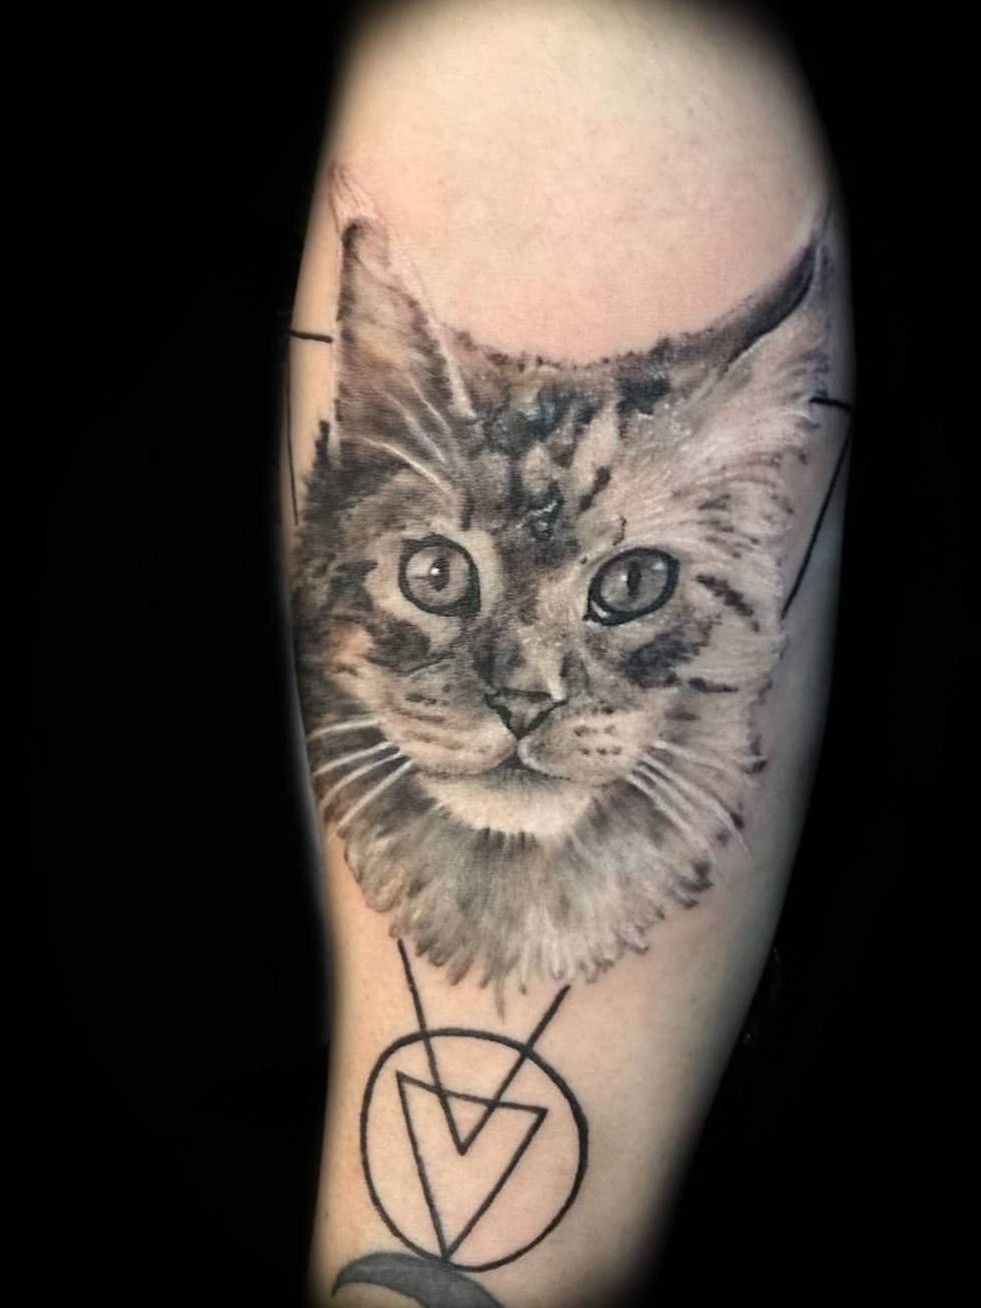 Tattoo uploaded by Chasinghawk Tattoos  Maine Coon Cat  Circus tattoo   Tattoodo